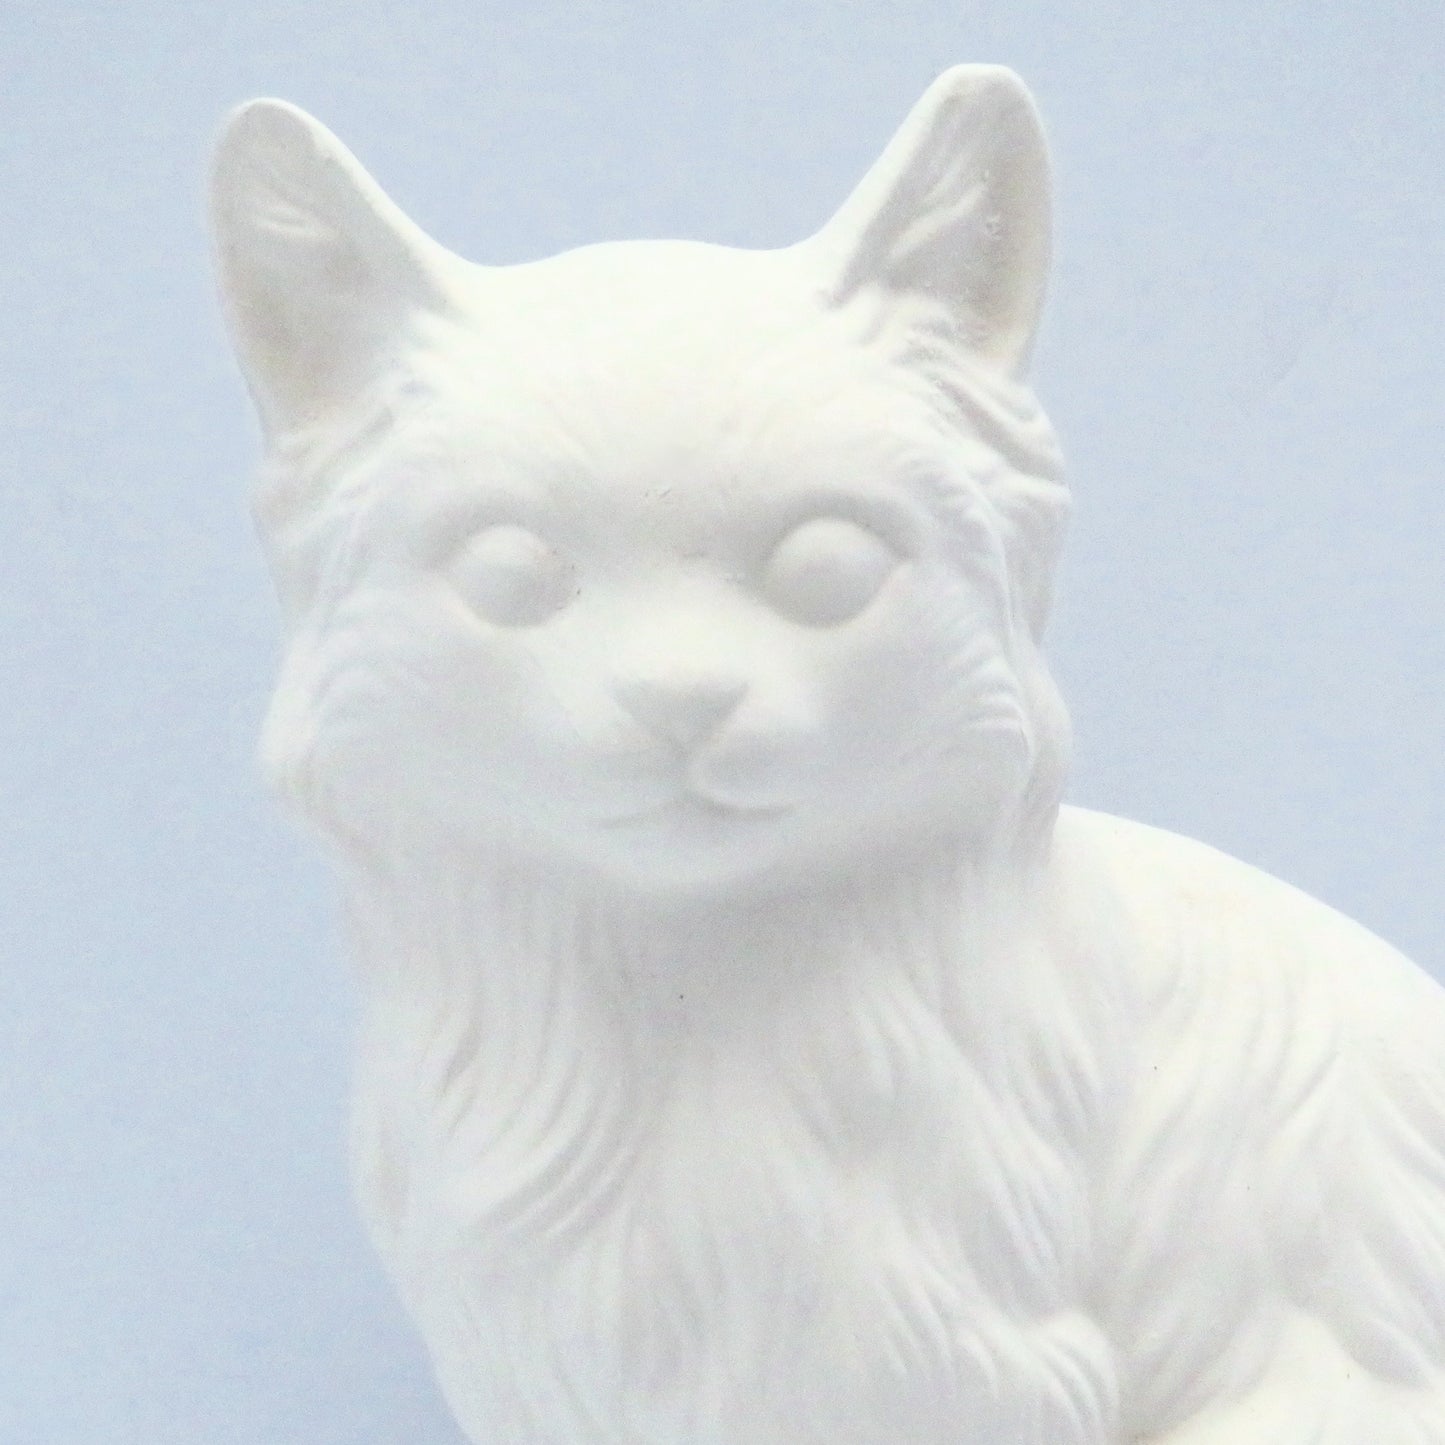 Unpainted Ceramic Bisque Cat Figurine / Cat Statue / Bisqueware / Ceramics to Paint / Paintable Ceramics / Cat Lover Gift / Cat Decor